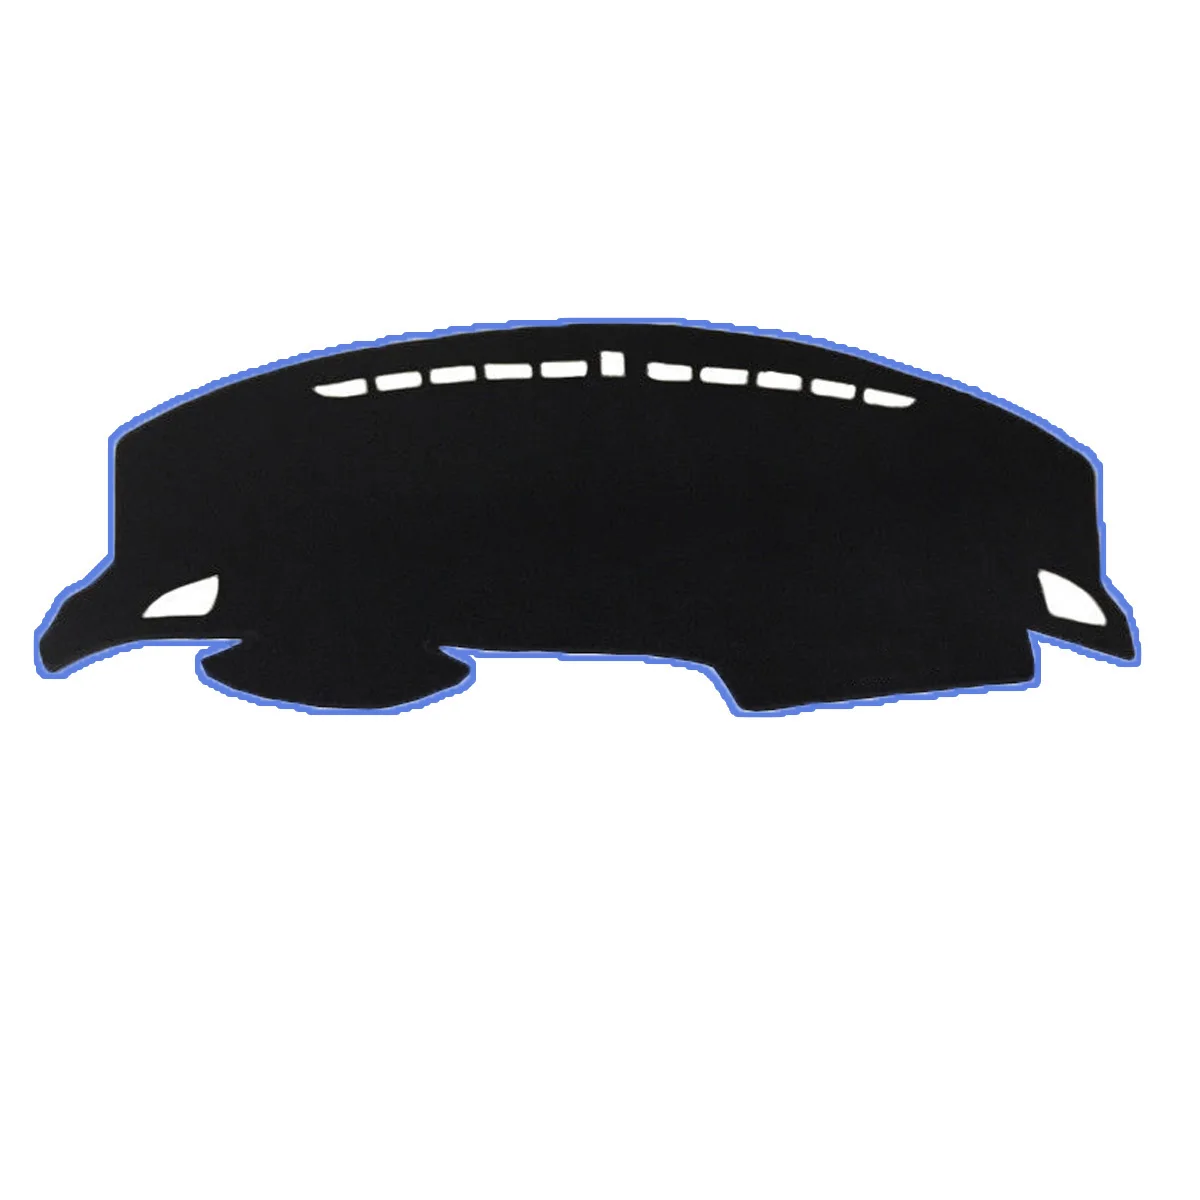 Dashboard Pad для Honda Civic для 10th gen г. Противоскользящие тире коврик козырек от солнца приборная панель крышка Автоматический аксессуары - Название цвета: Синий